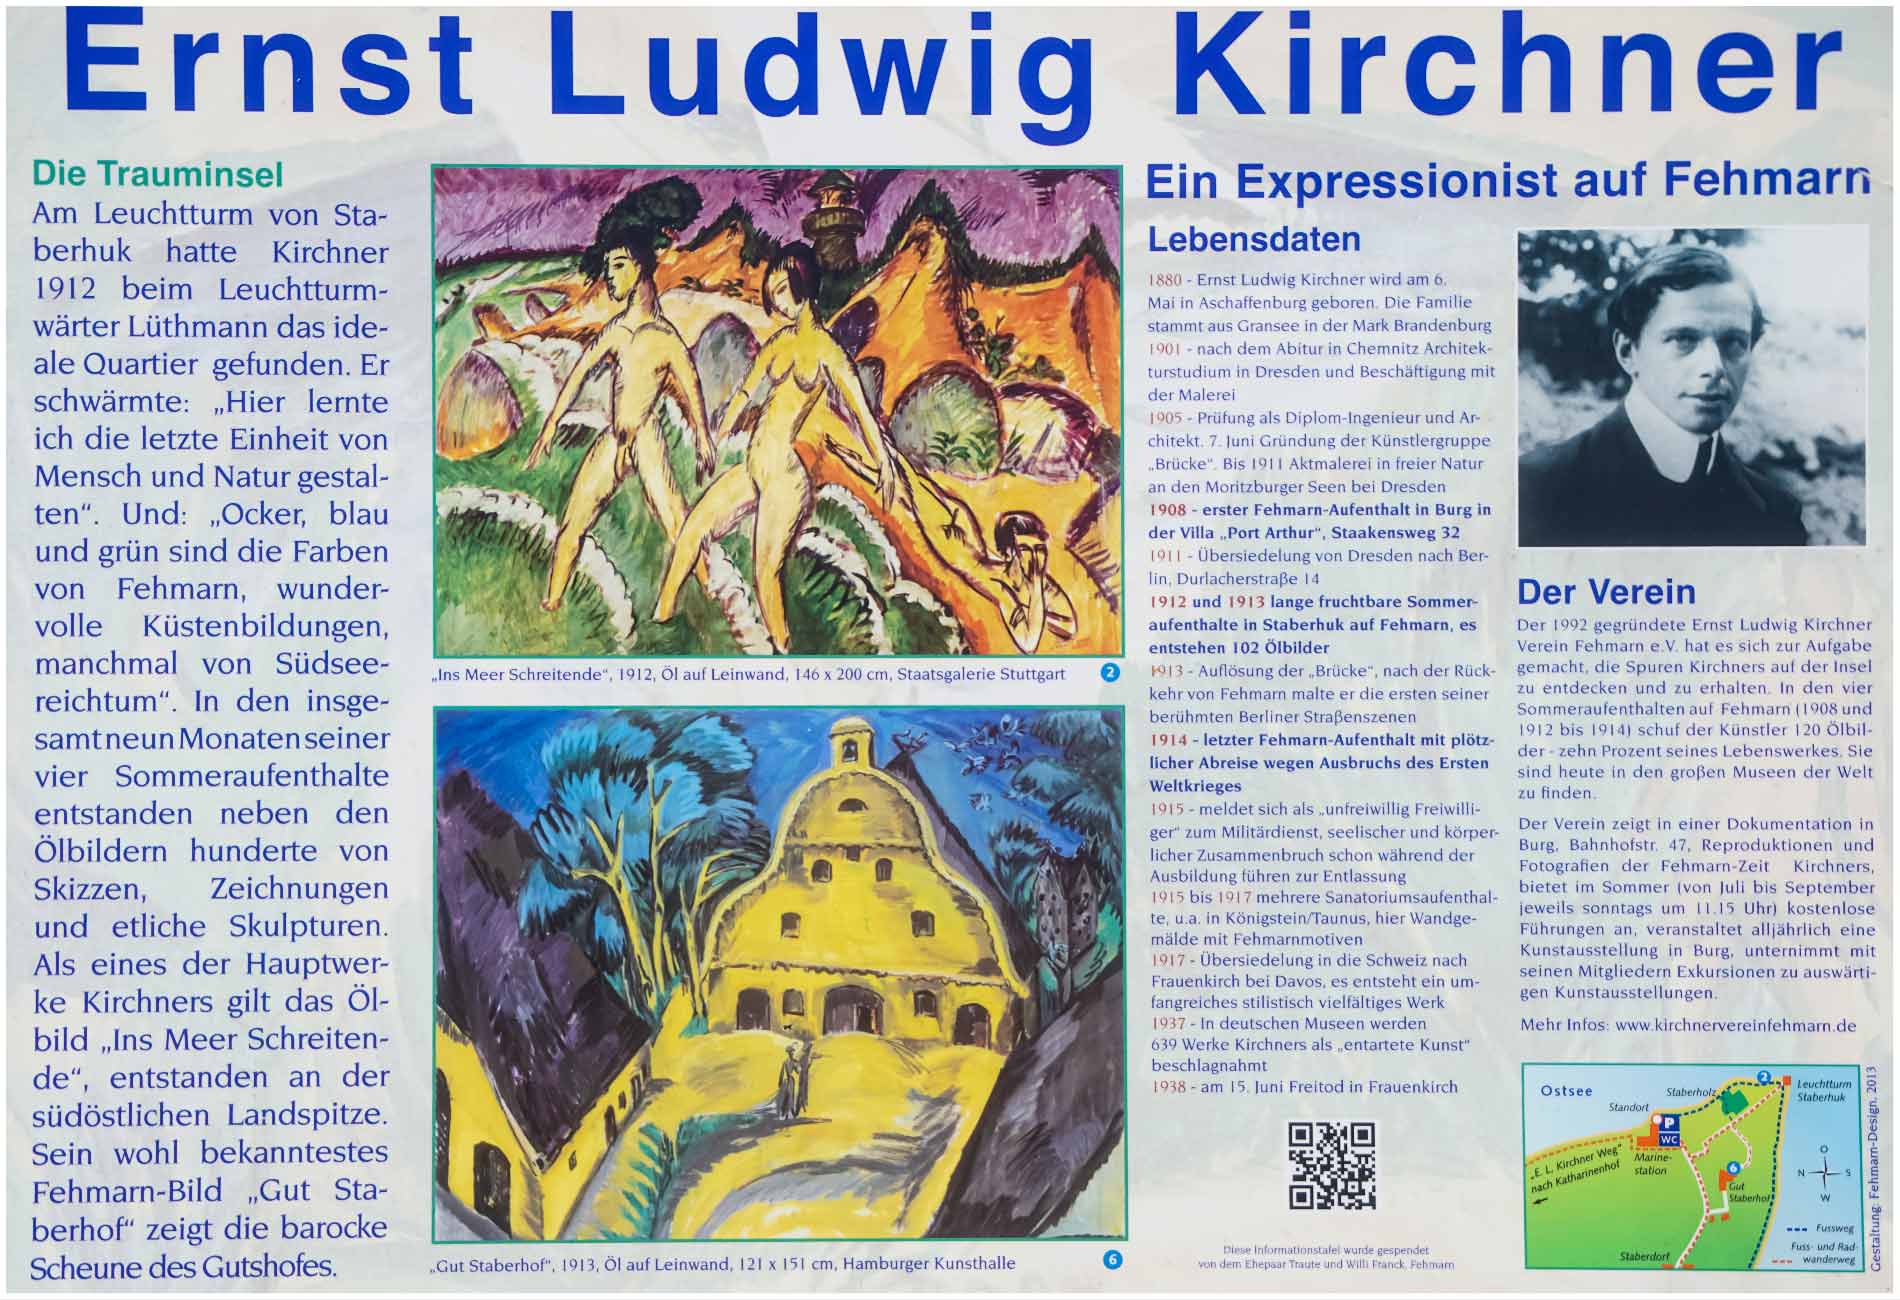 Künstler Ernst Ludwig Kirchner 1912 in Staberhuk auf Fehmarn